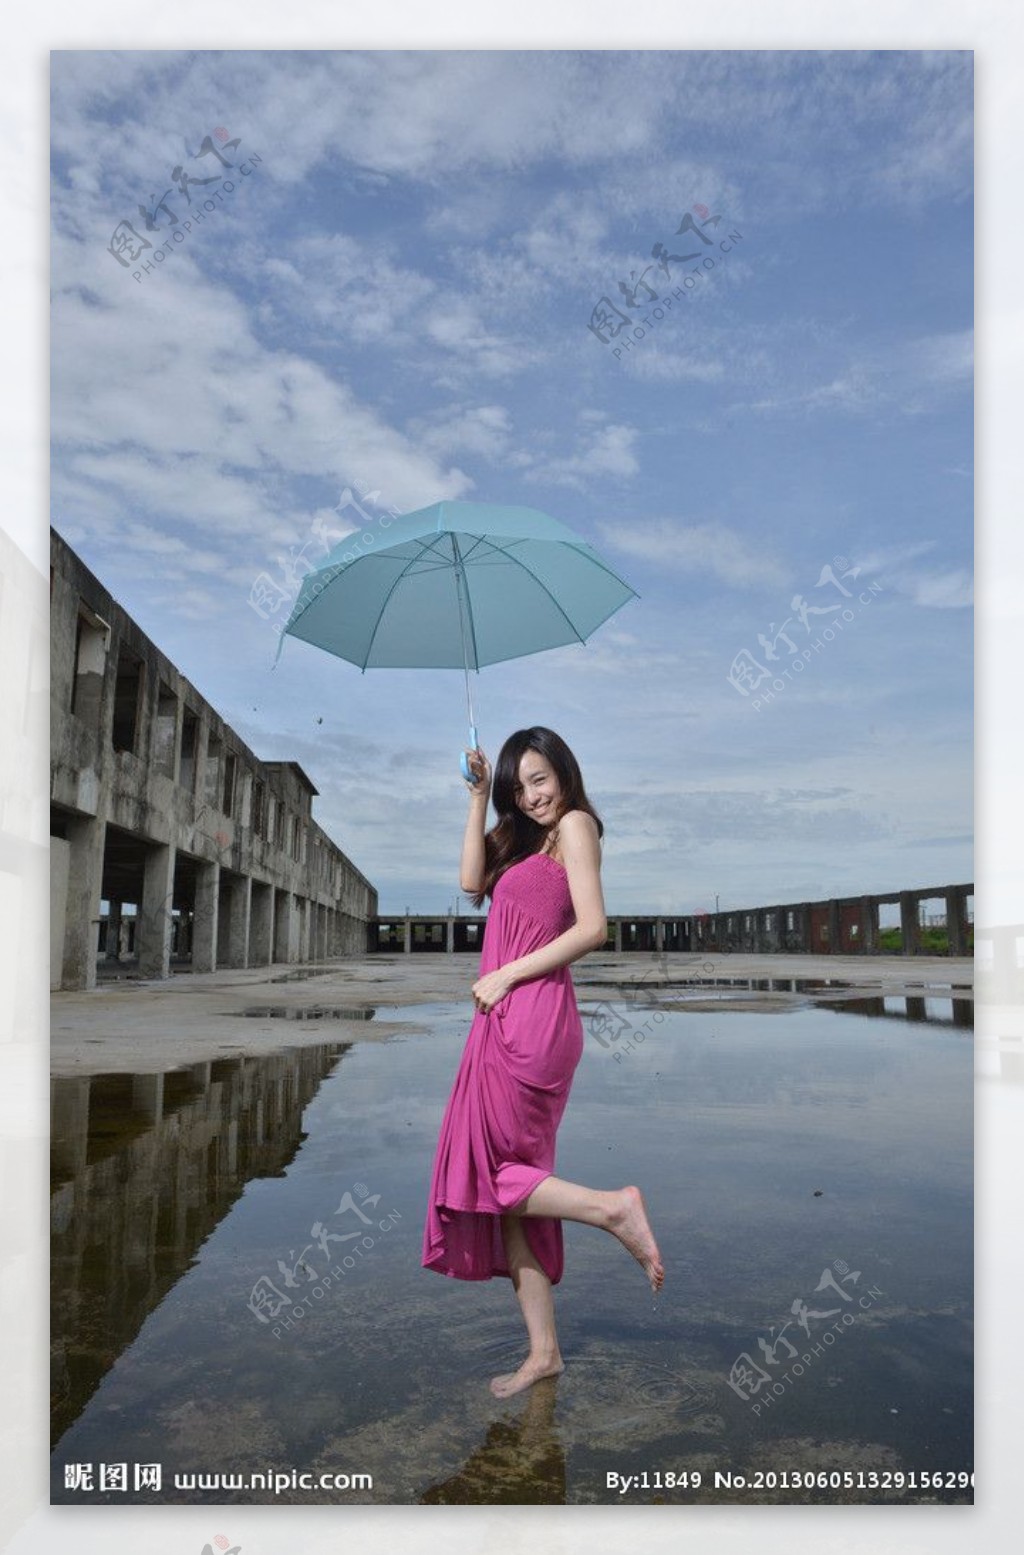 雨天打伞的漂亮少女png元素素材图片下载-素材编号12149703-素材天下图库